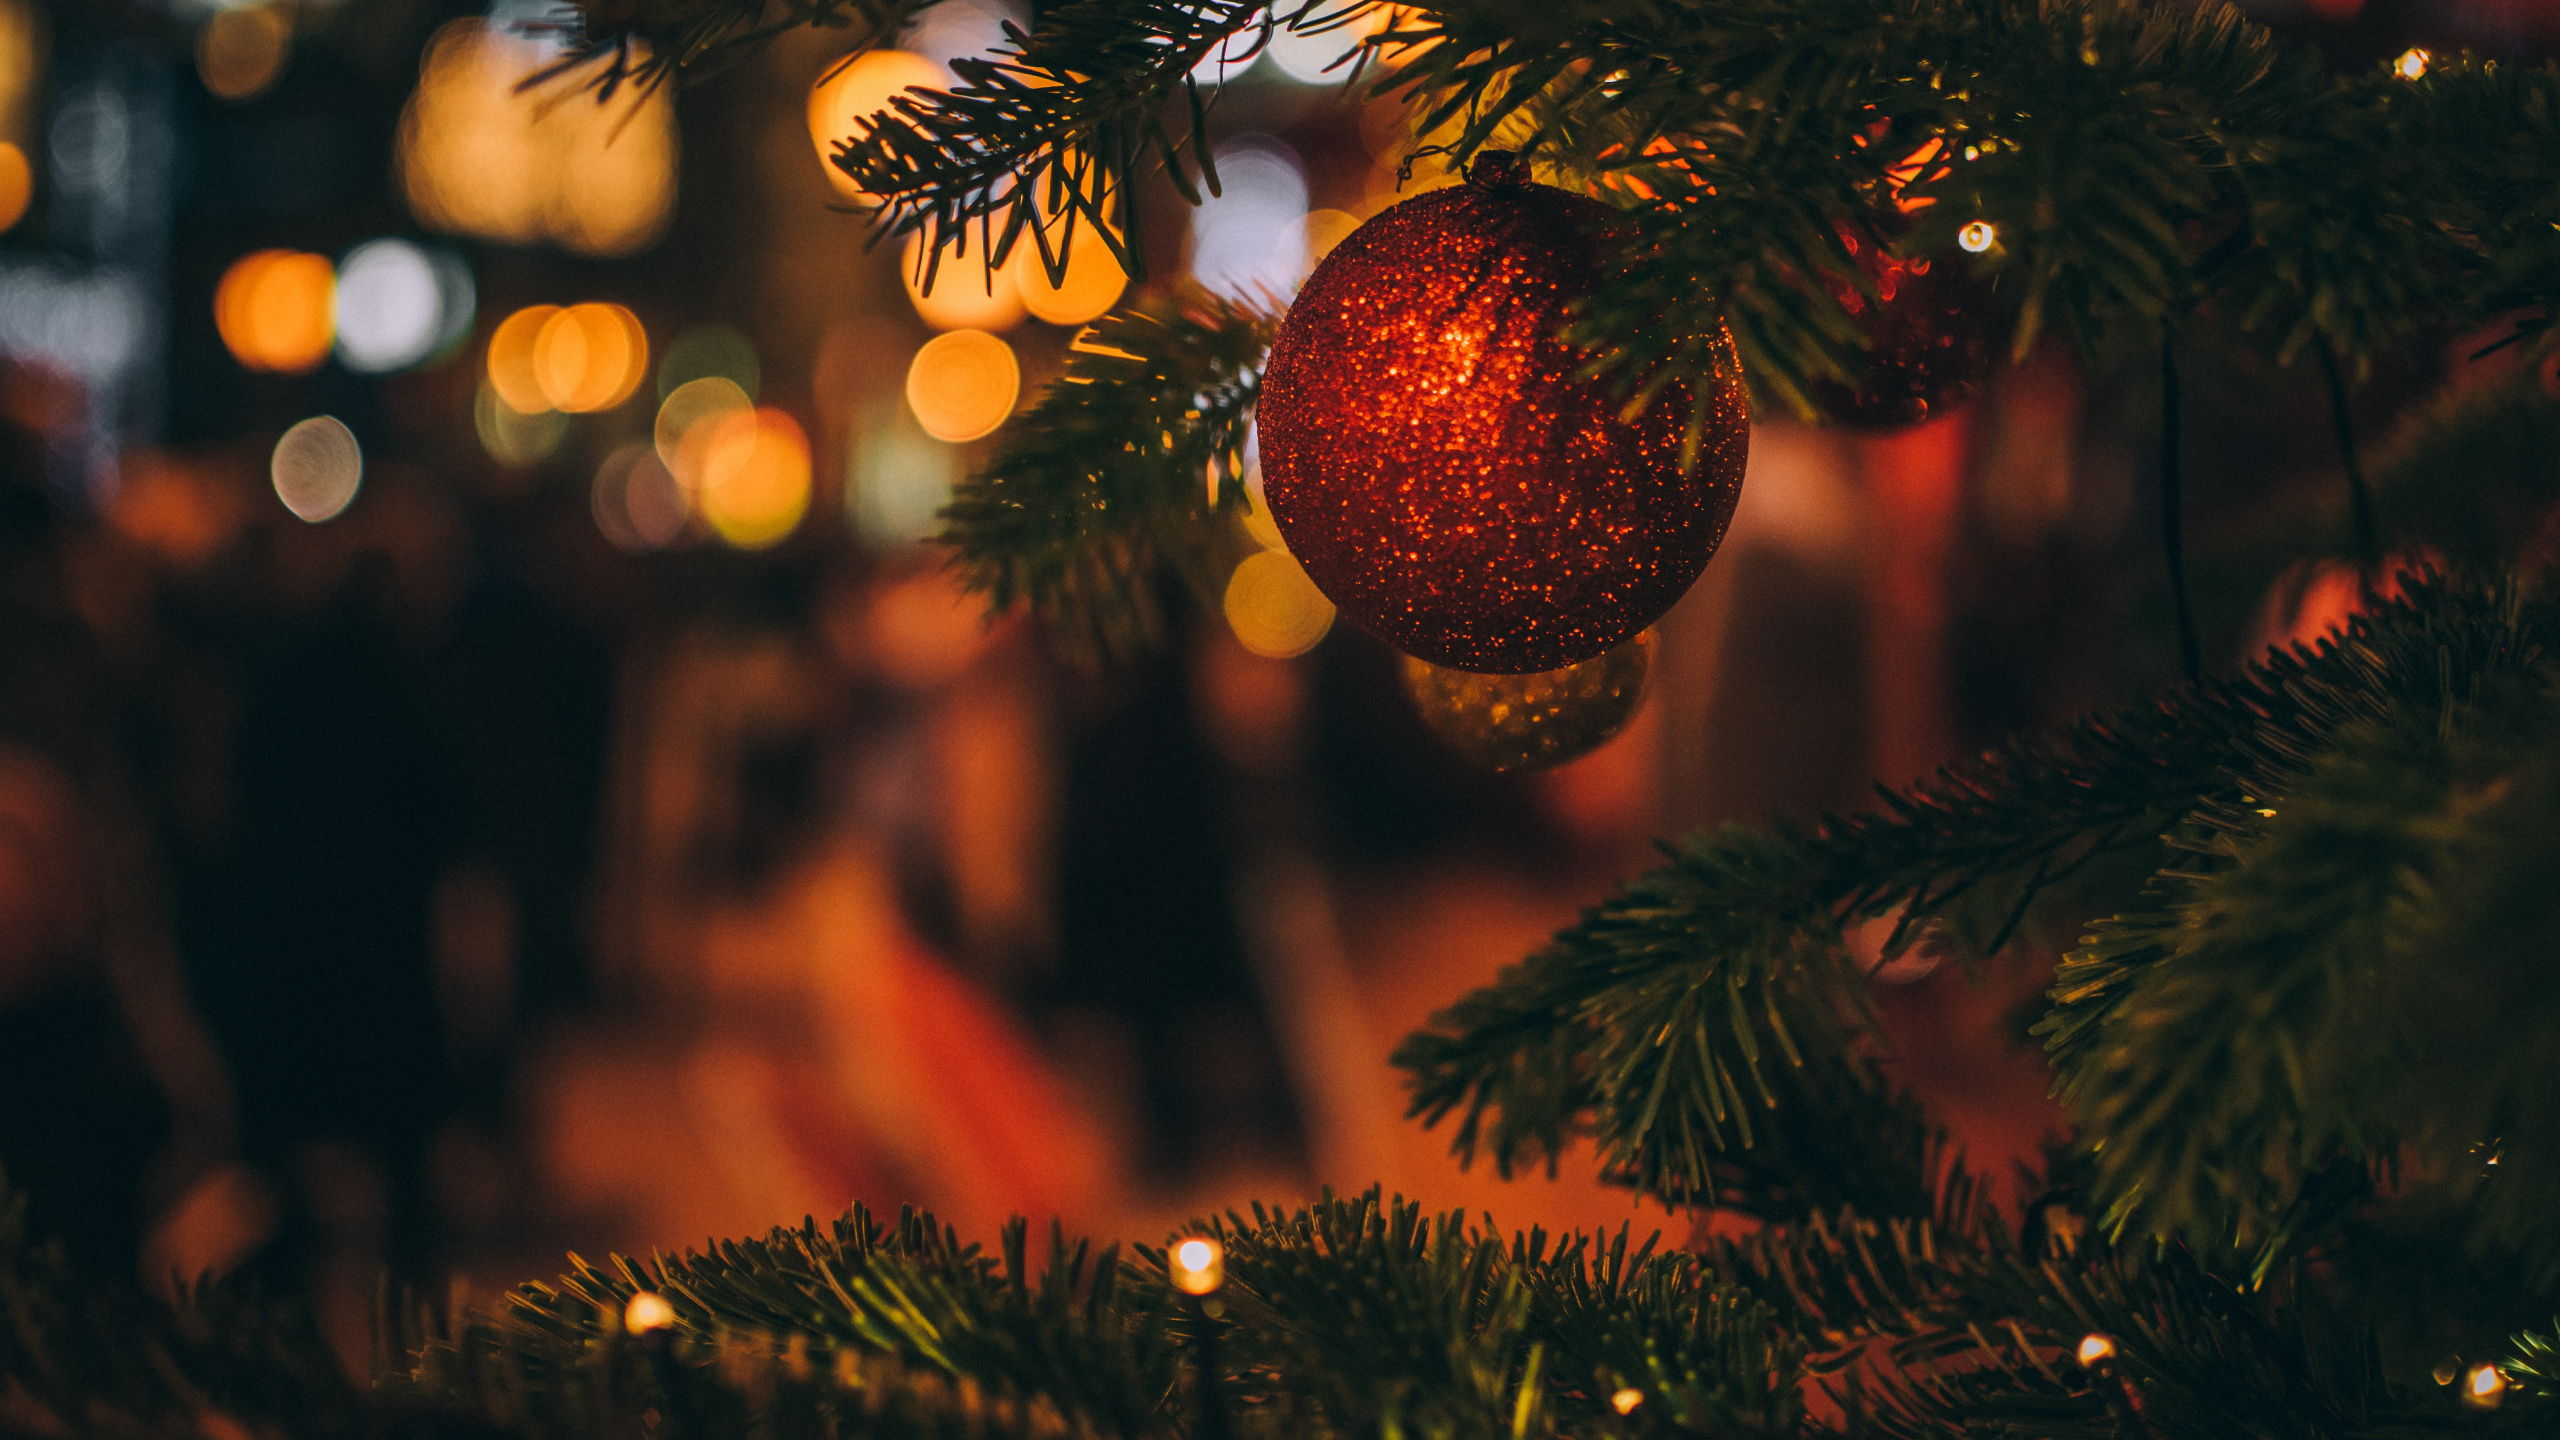 Weihnachten, Weihnachtsbaum, Baum, Christmas Ornament, Fichte. Wallpaper in 2560x1440 Resolution